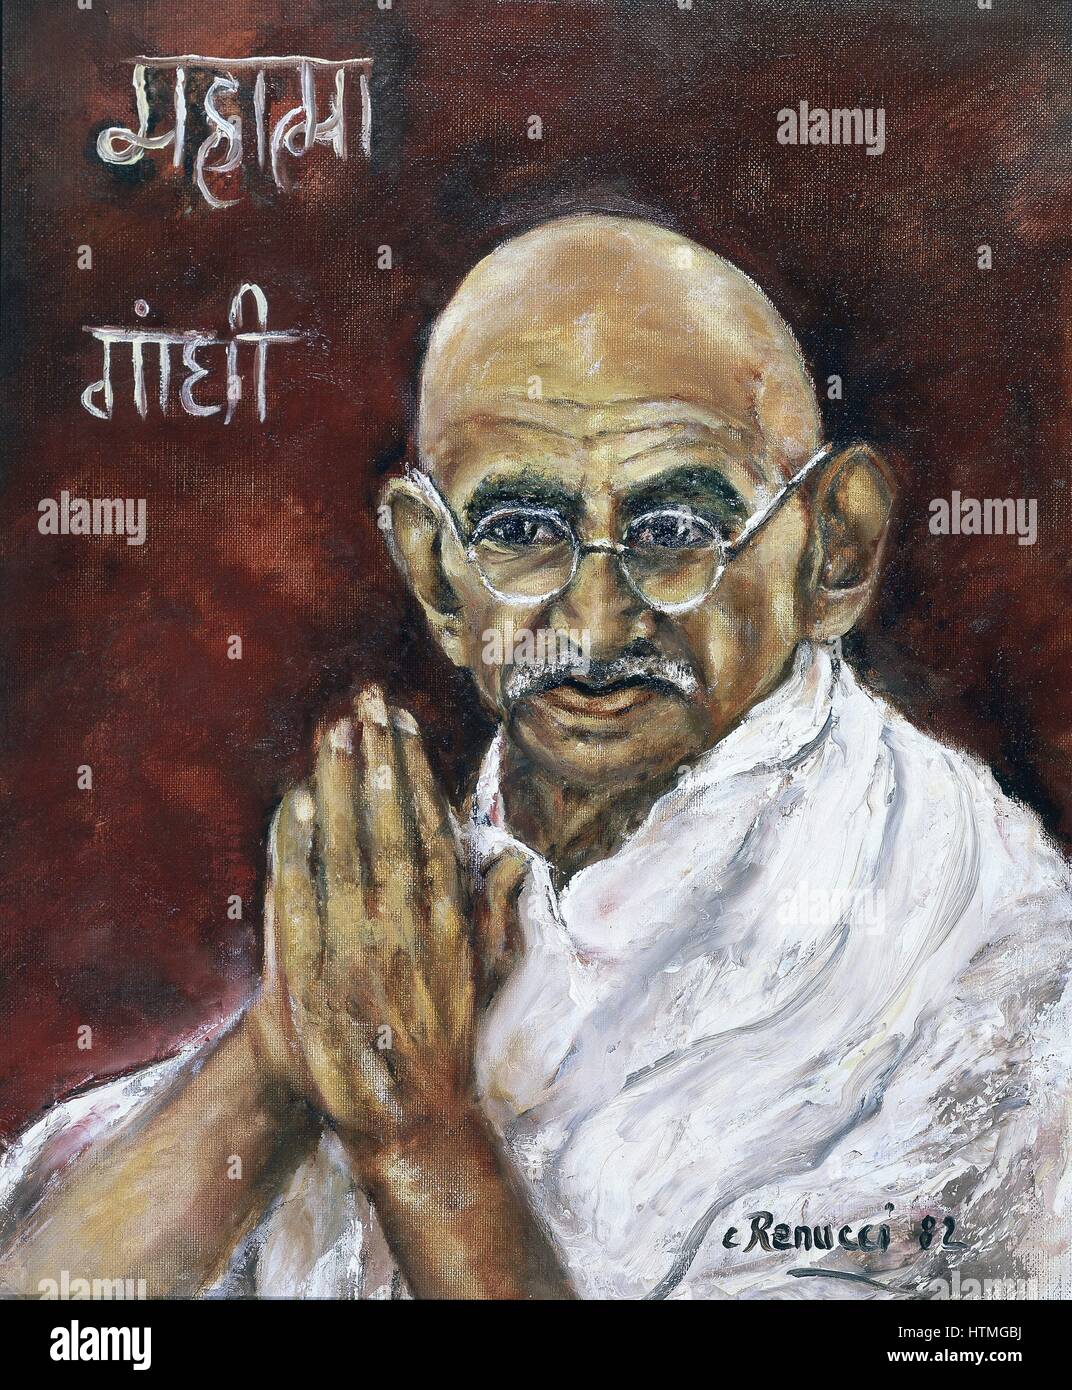 Mohondas Karamchand Gandhi (1869-1948), bekannt als Mahatma (große Seele) indischen nationalistischen Führer. Gemälde von Renucci, 1982. Auflistung der indische Botschafter in Paris. Stockfoto